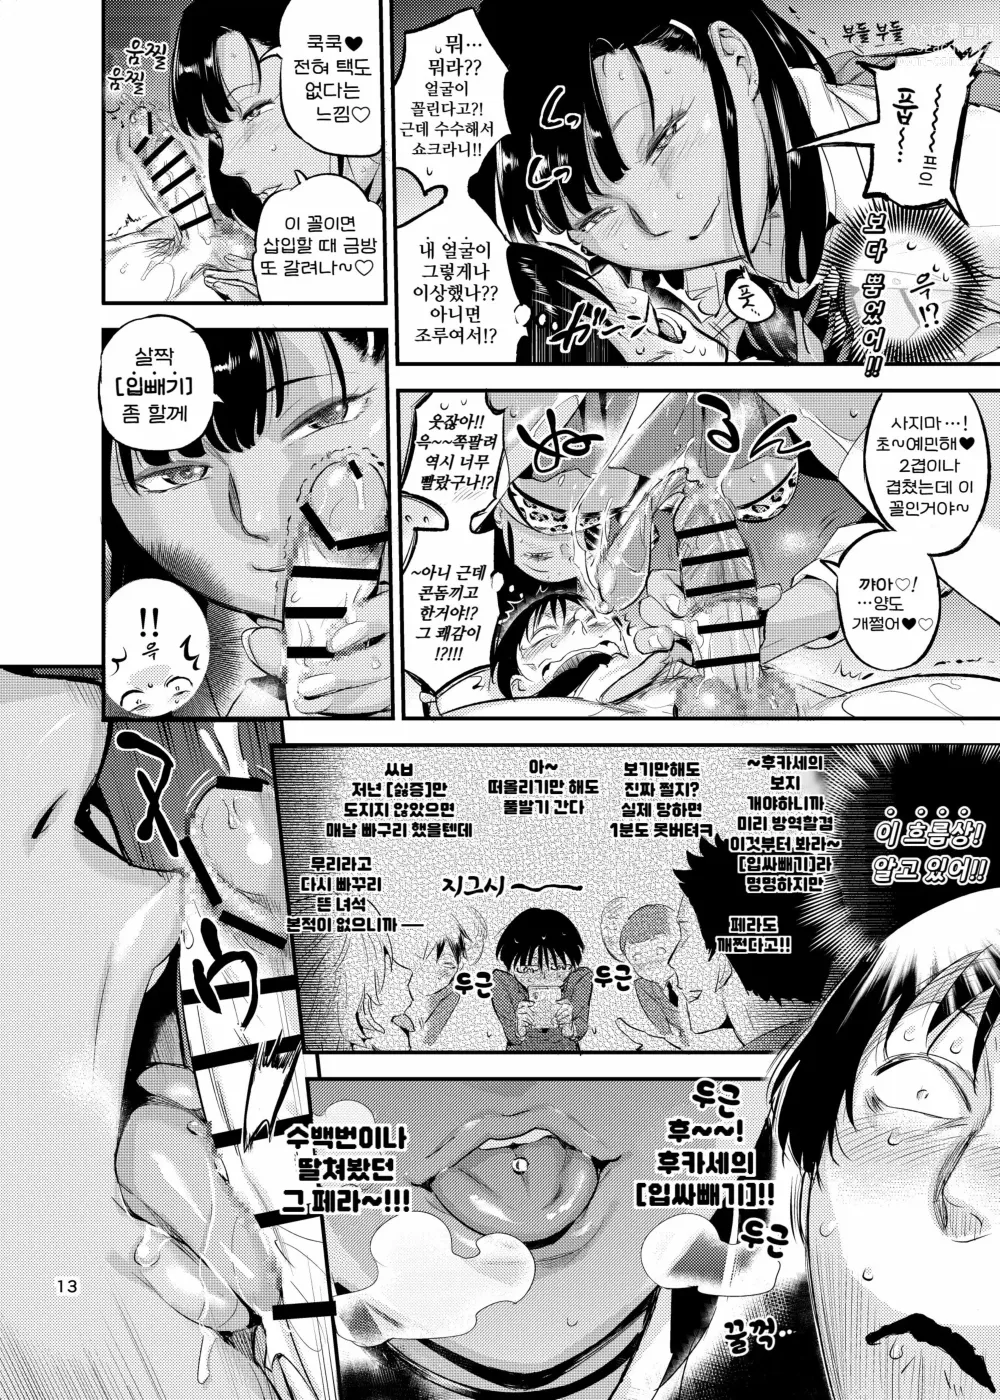 Page 13 of doujinshi 天上美人は蟻の顔見てほくそ笑む